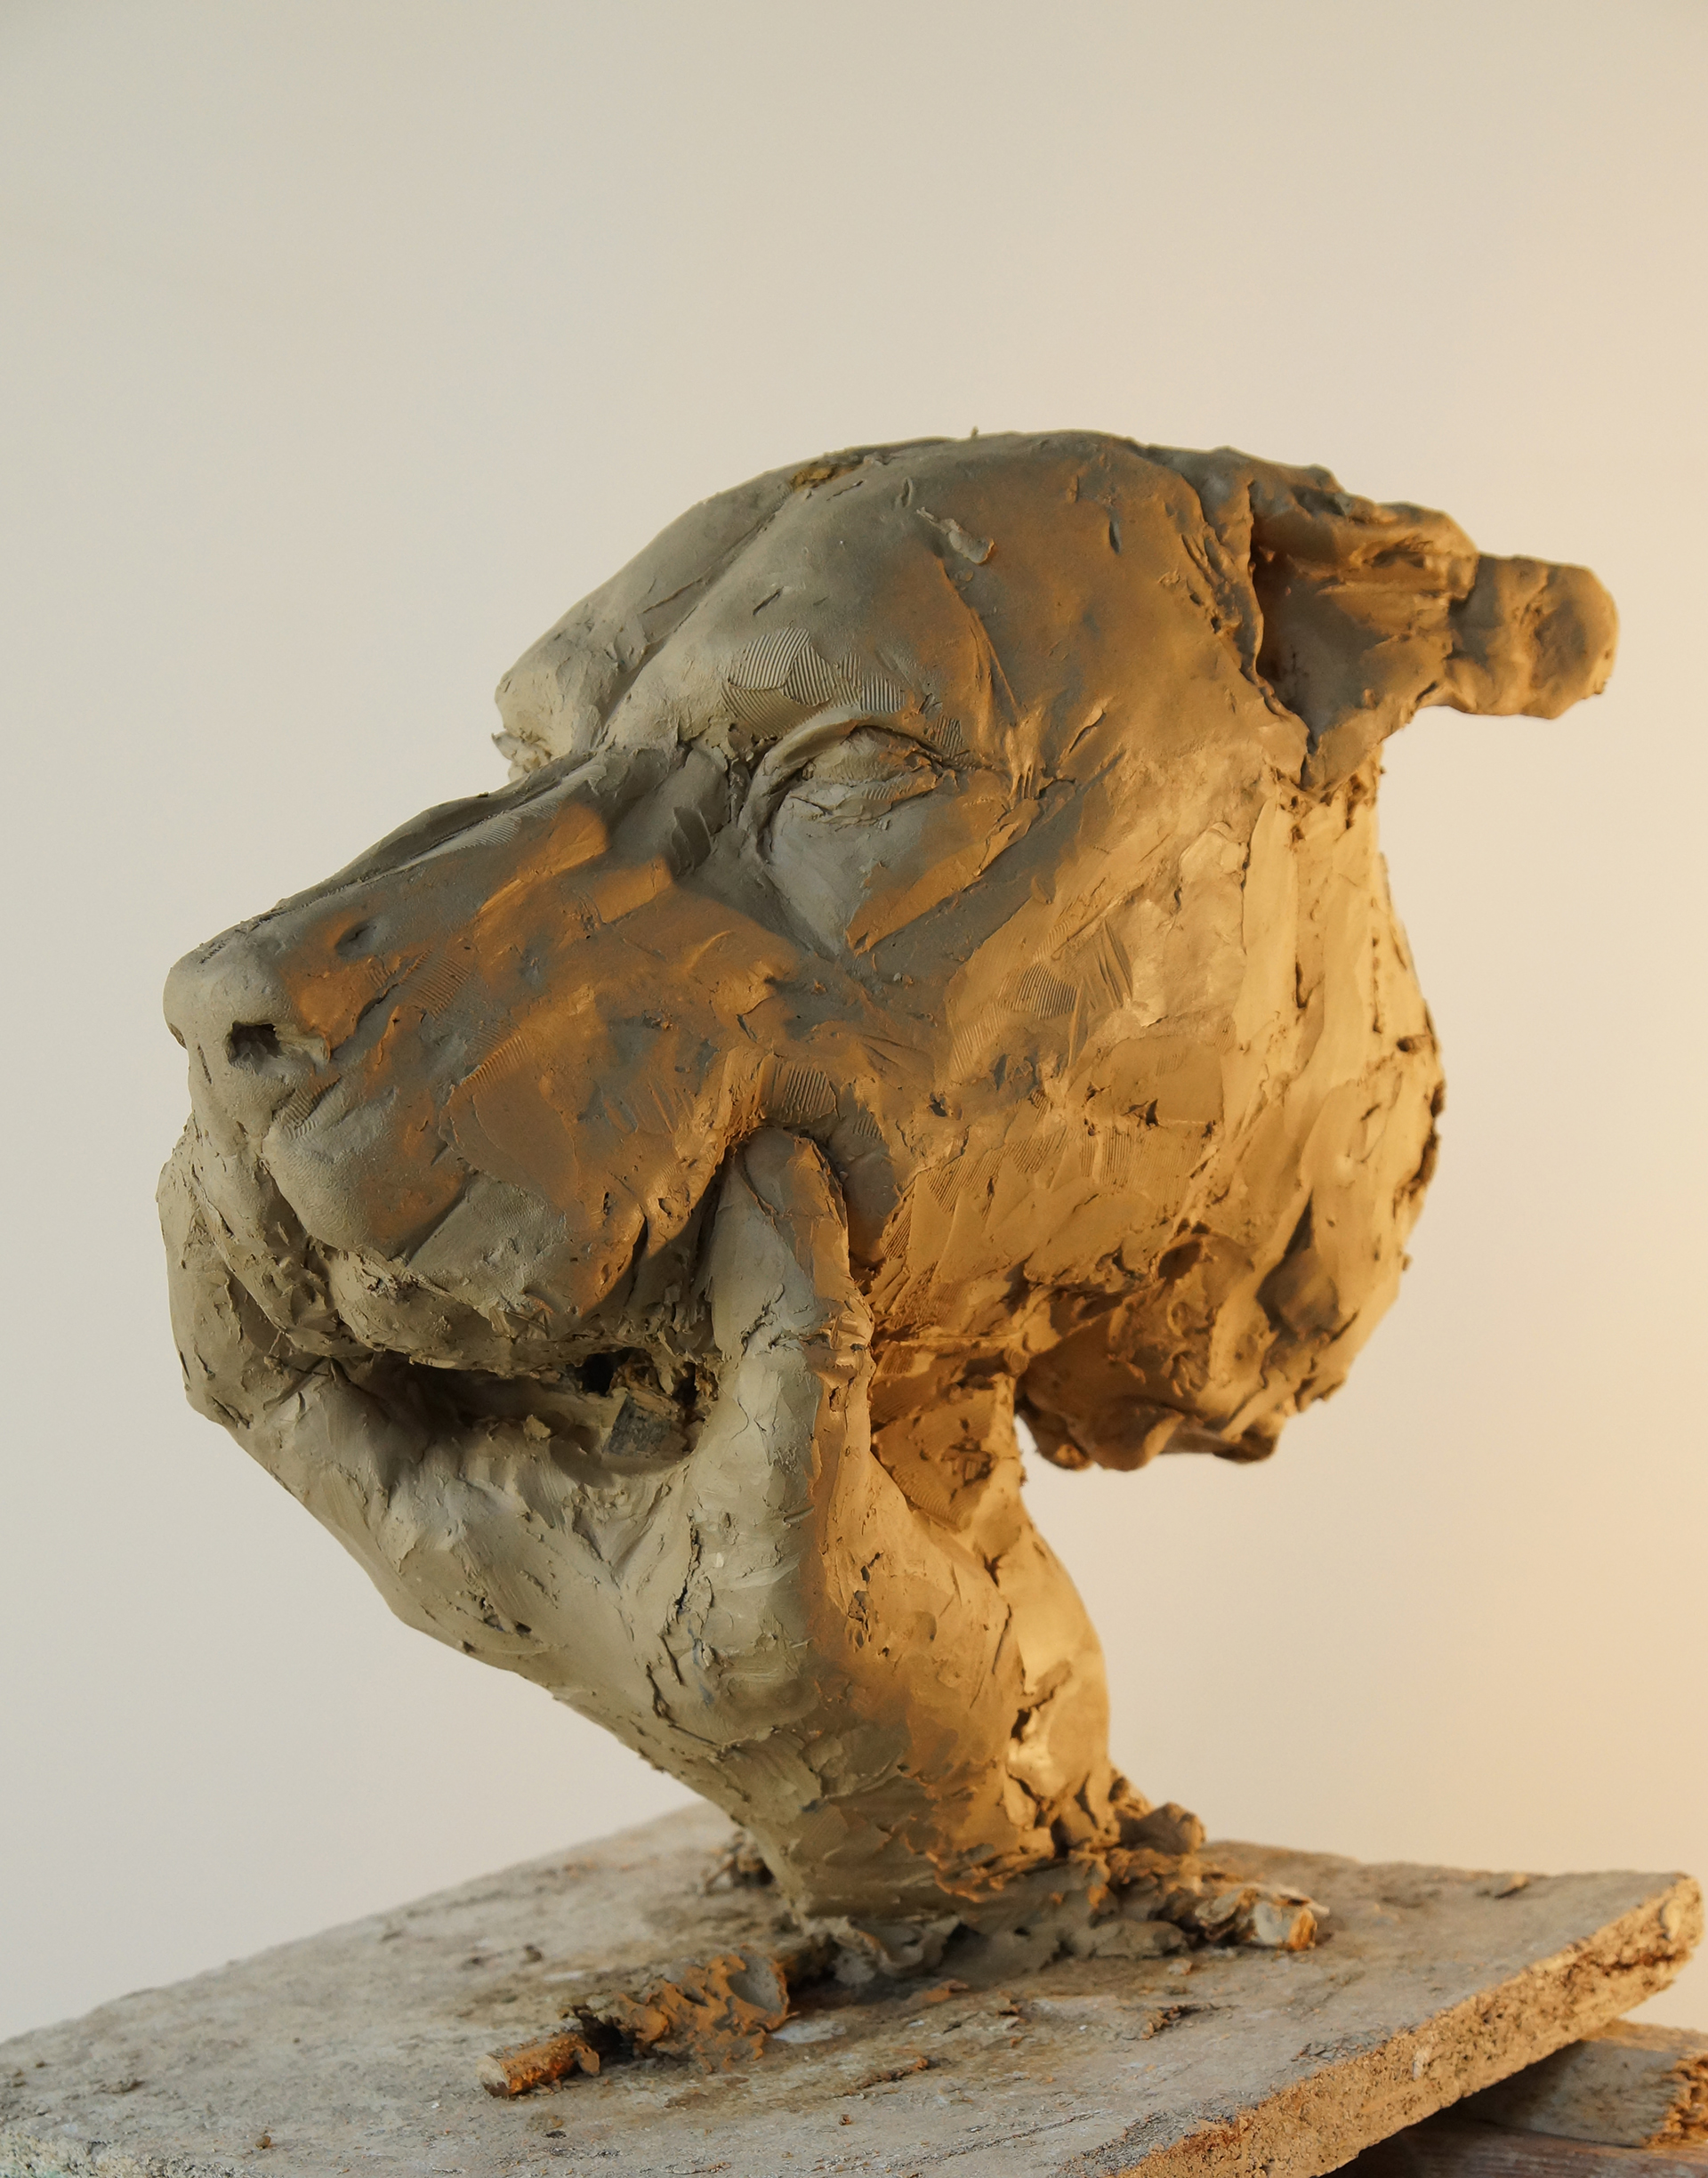 Realistyczna forma przestrzenna wykonana w glinie. Rzeźba ukazuje głowę psa z uszami położonymi po sobie, wspartej na ludzkiej lewej dłoni. Palce zaciskają zamknięty pysk psa